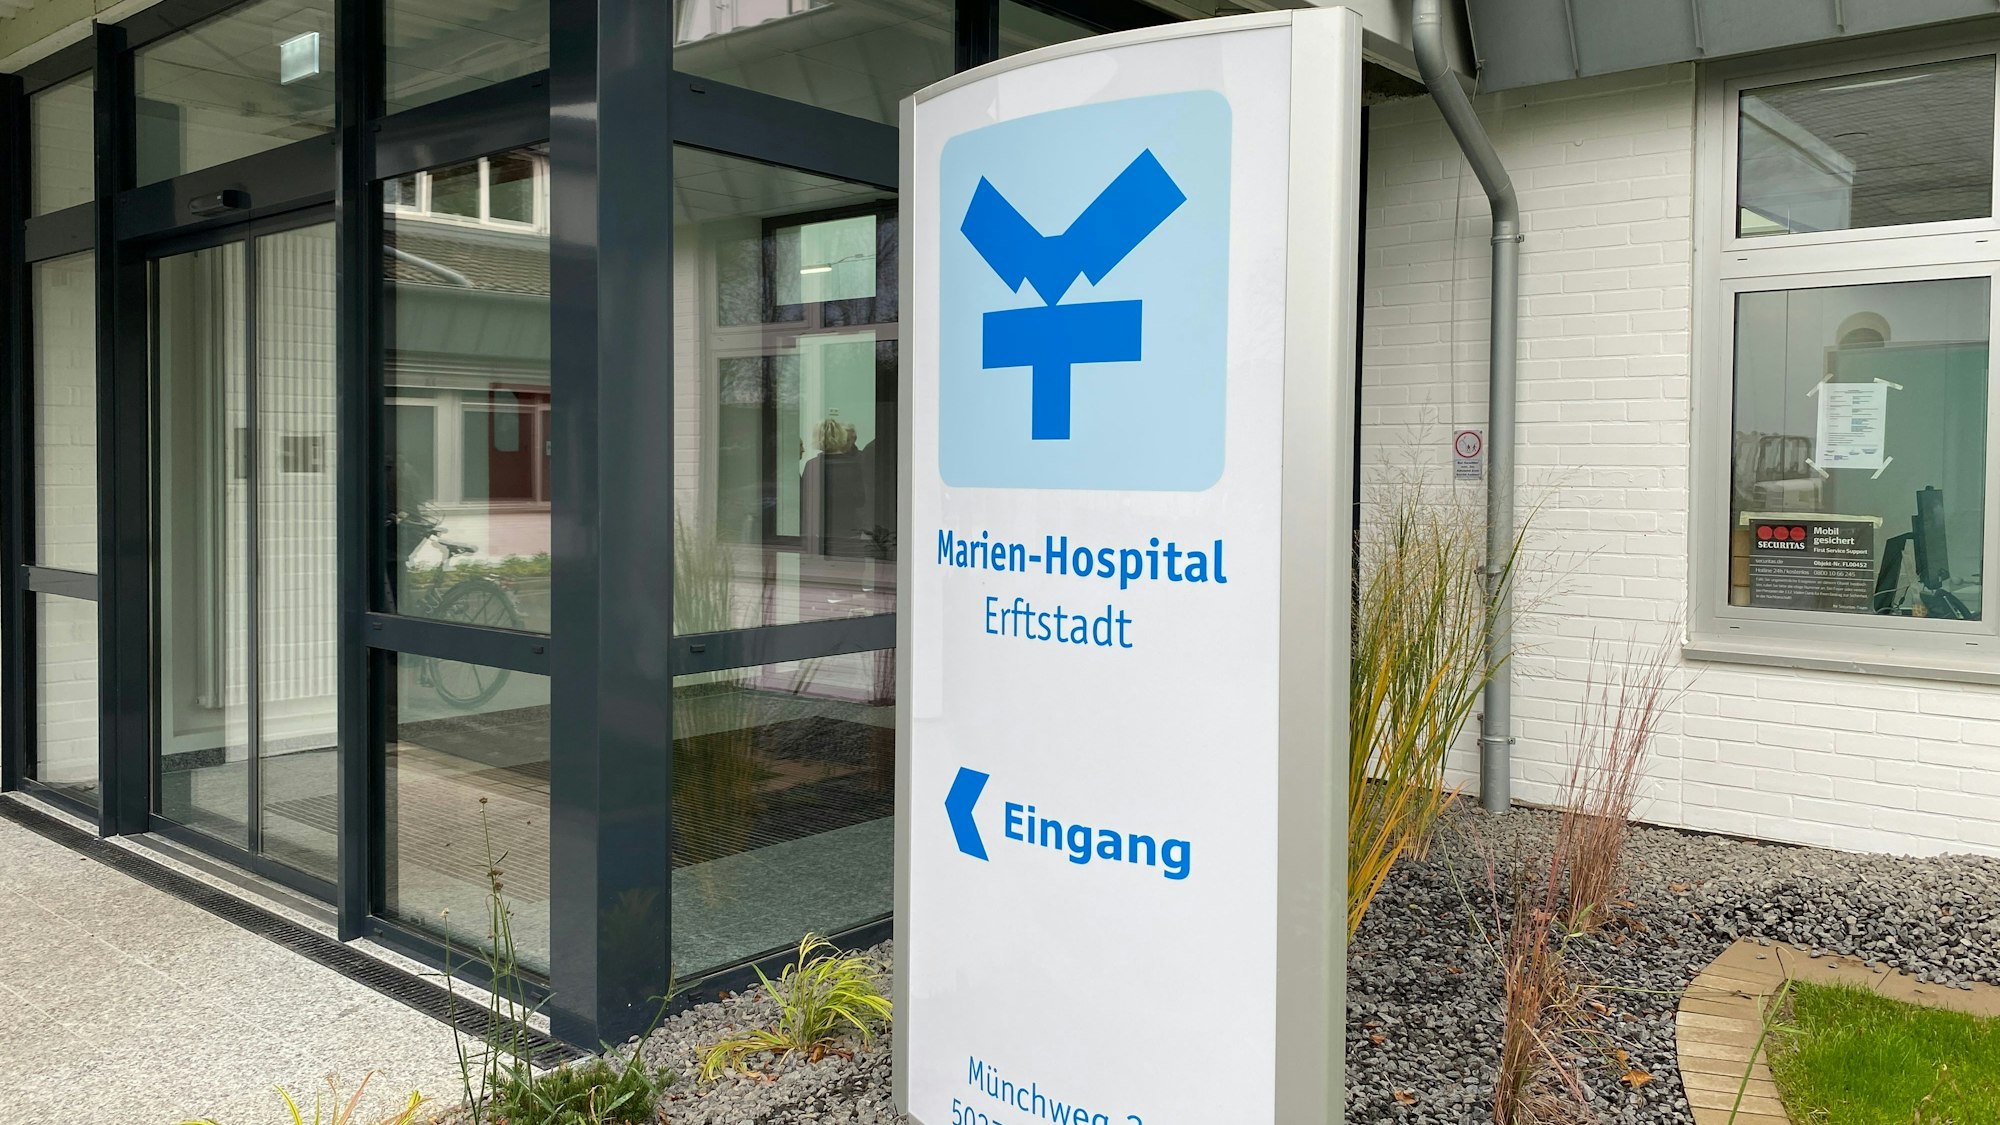 Zu sehen ist der Eingang eines Krankenhauses.